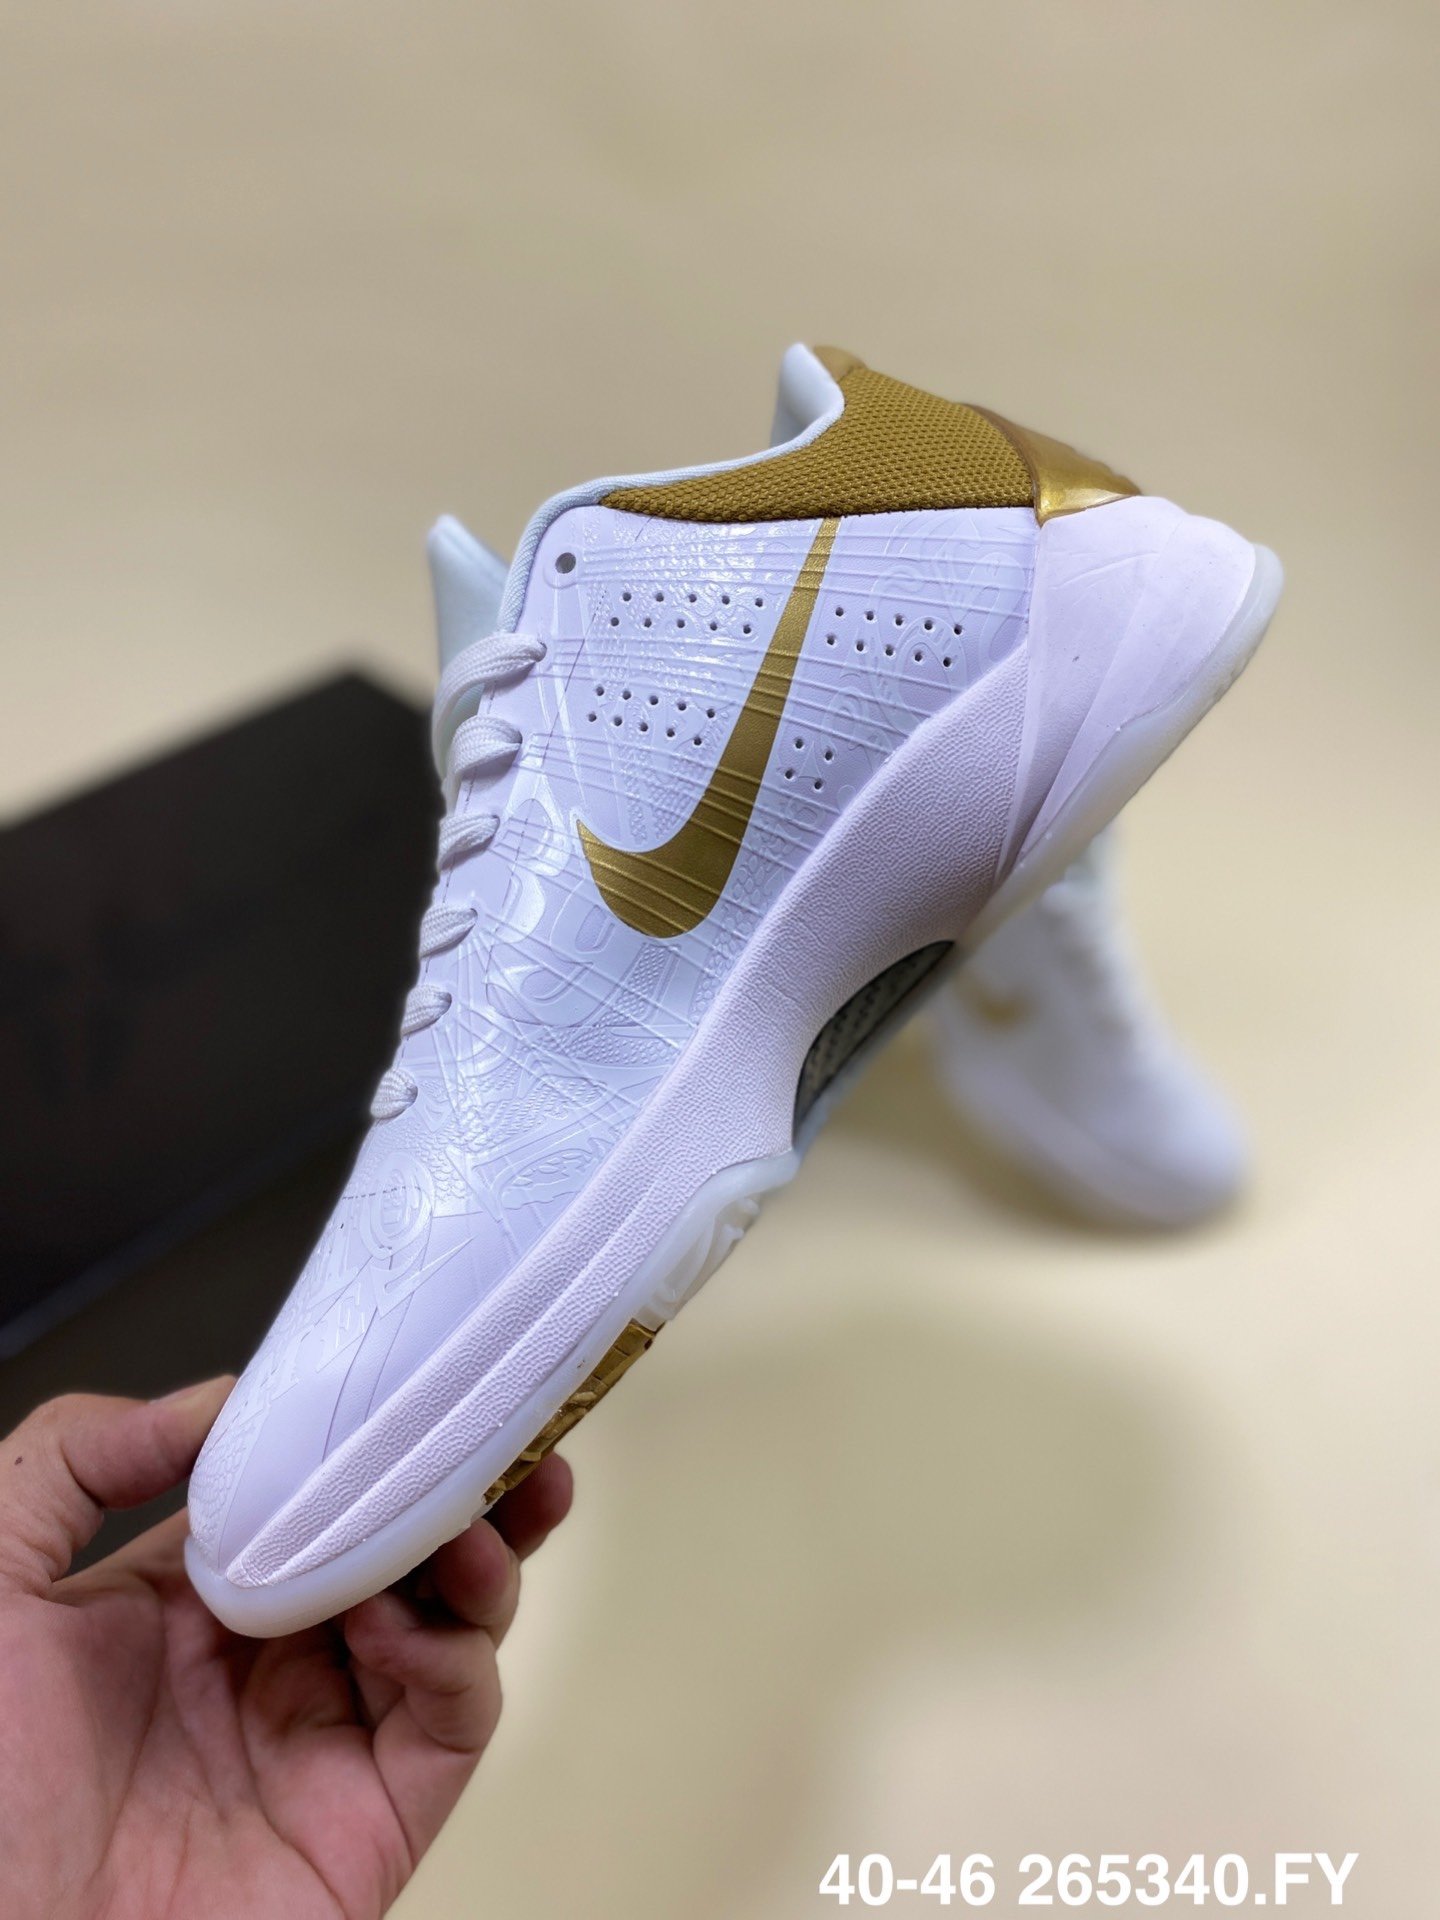 New Men Nike Kobe Bryant V White Gold Shoes